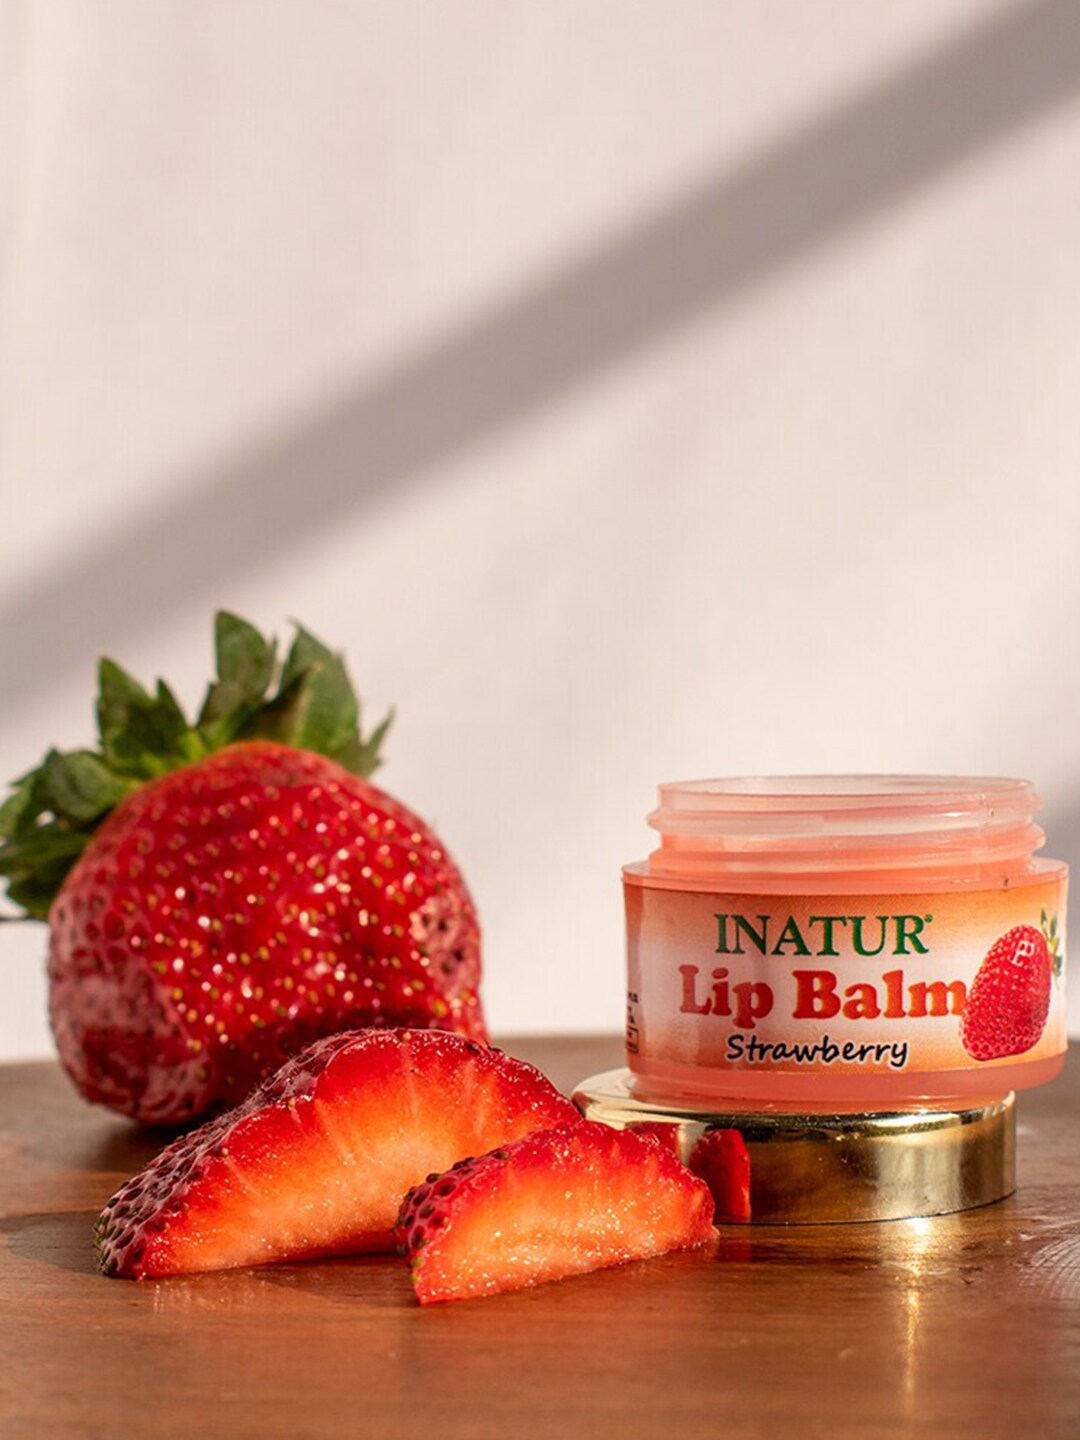 Inatur Red Strawberry Lip Balm 10 g Price in India